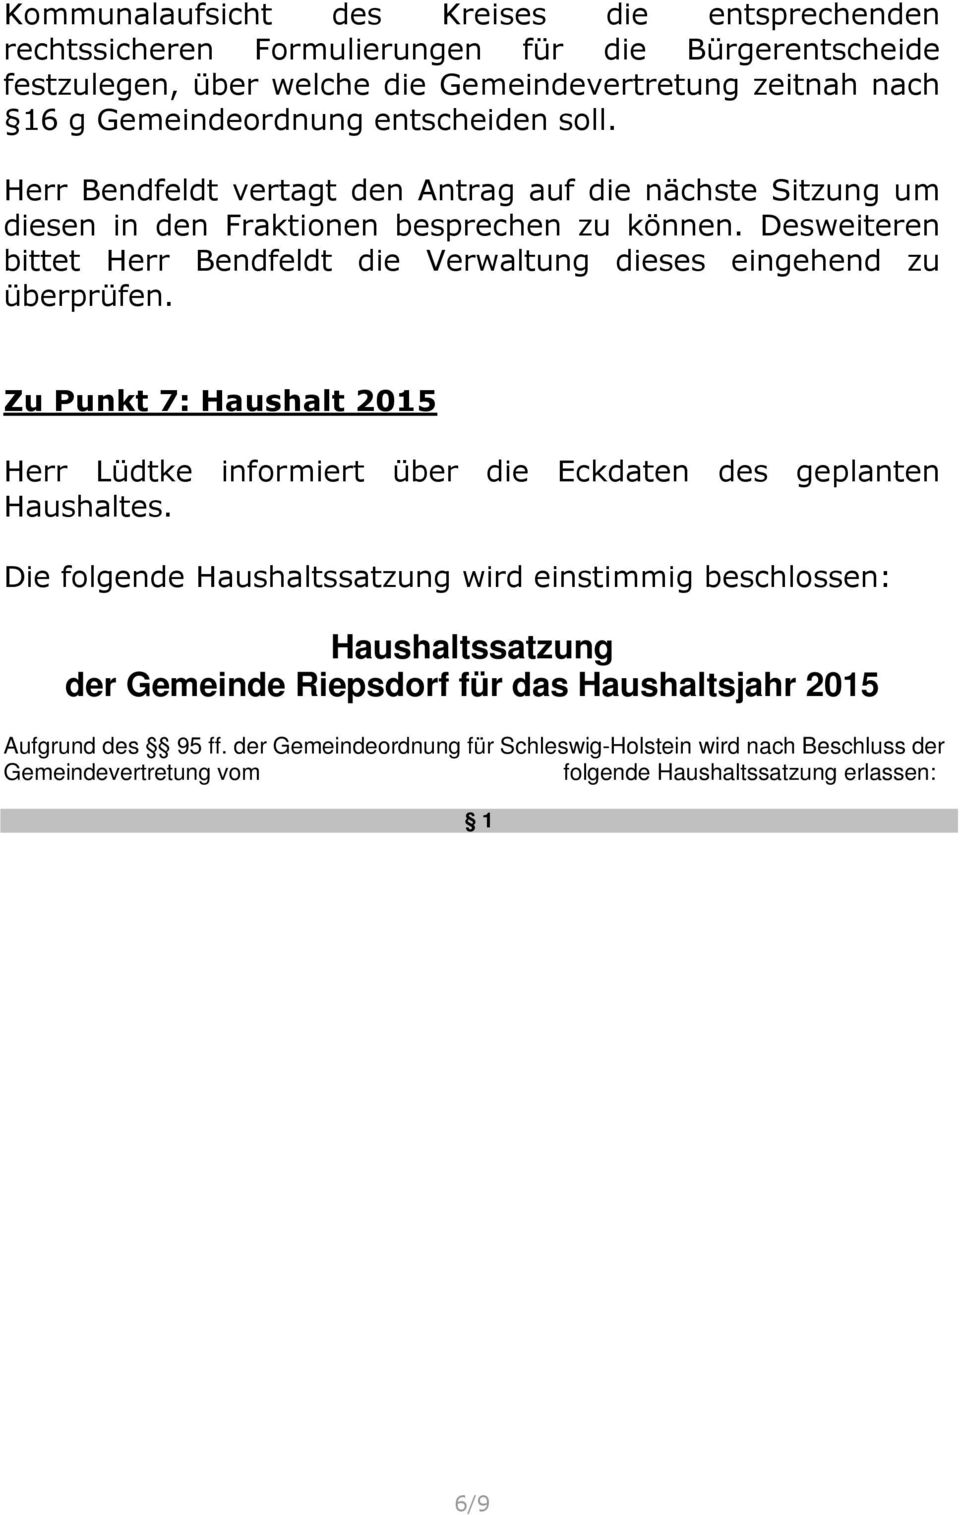 Desweiteren bittet Herr Bendfeldt die Verwaltung dieses eingehend zu überprüfen. Zu Punkt 7: Haushalt 2015 Herr Lüdtke informiert über die Eckdaten des geplanten Haushaltes.